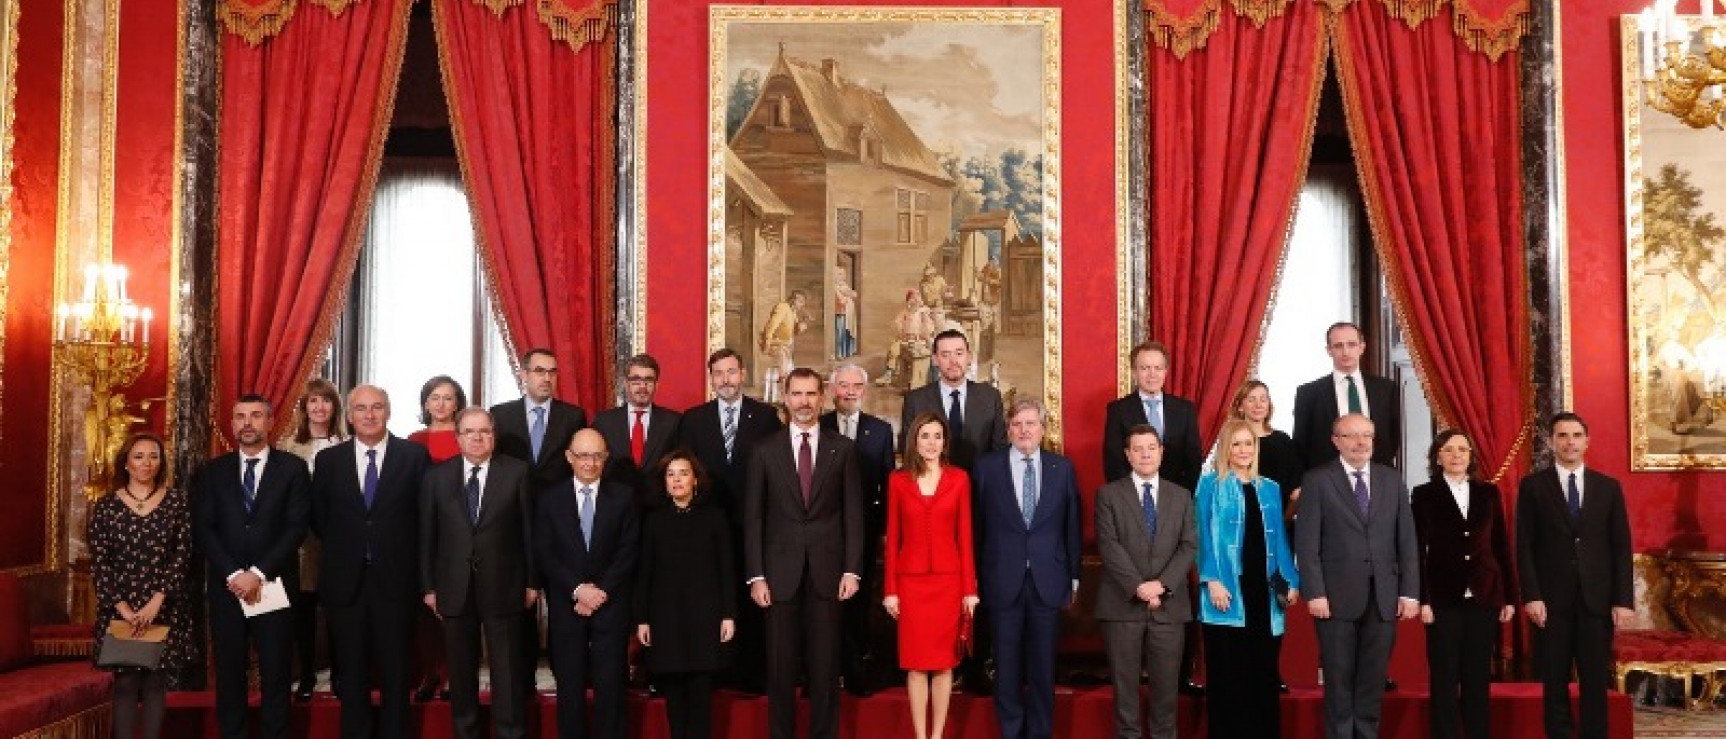 Los reyes con las autoridades institucionales asistentes al acto. Foto: Casa Real.